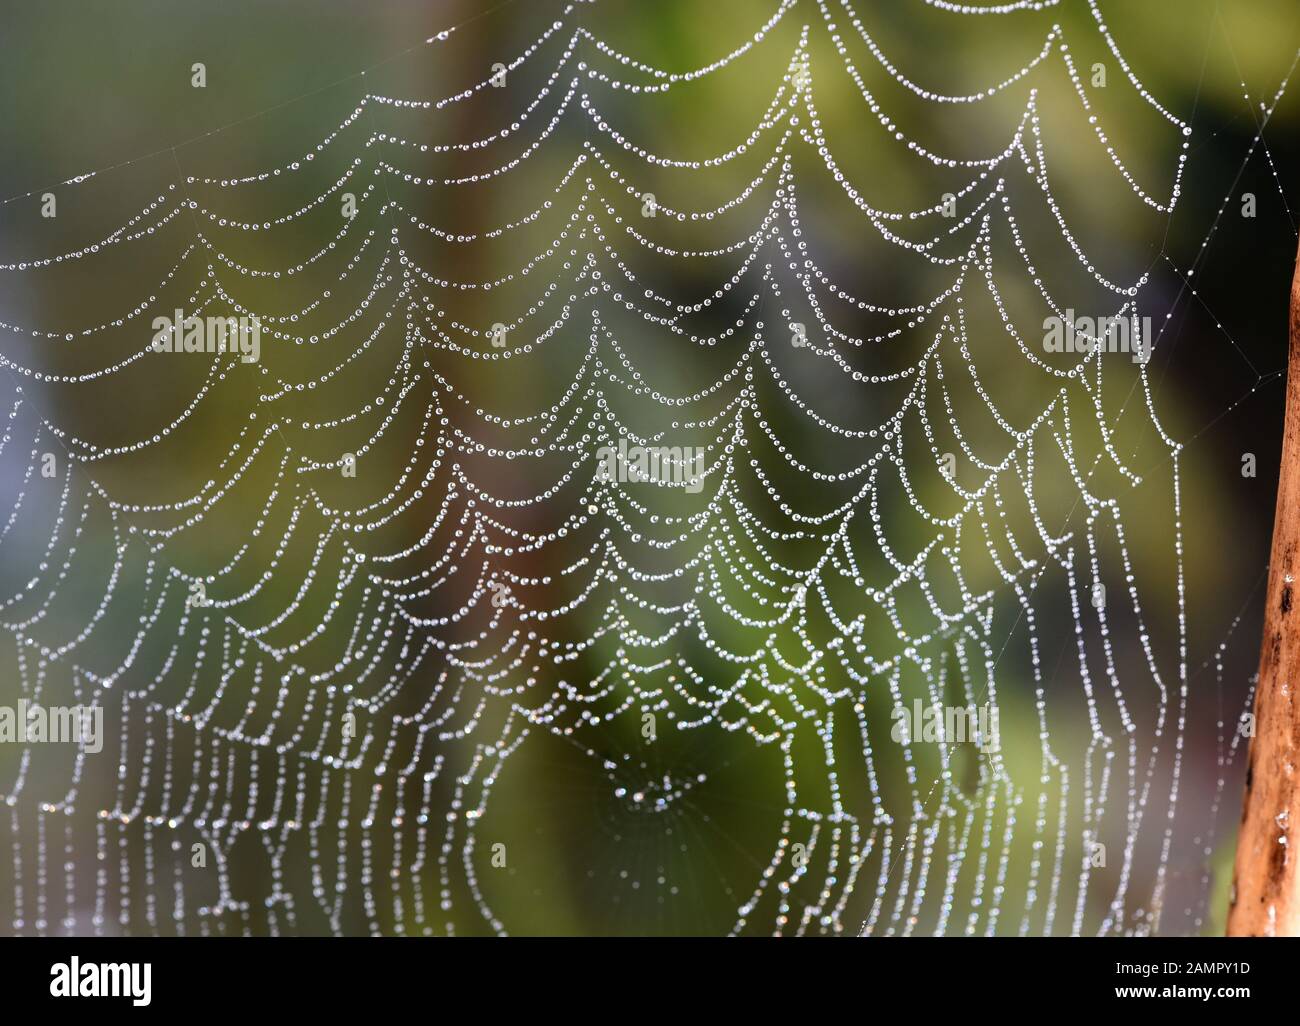 Spinnwebe im Gegenlicht  mit Wassertroepfchen auf den Faeden. Cobwebs in the back light with water droplets on the threads. Stock Photo